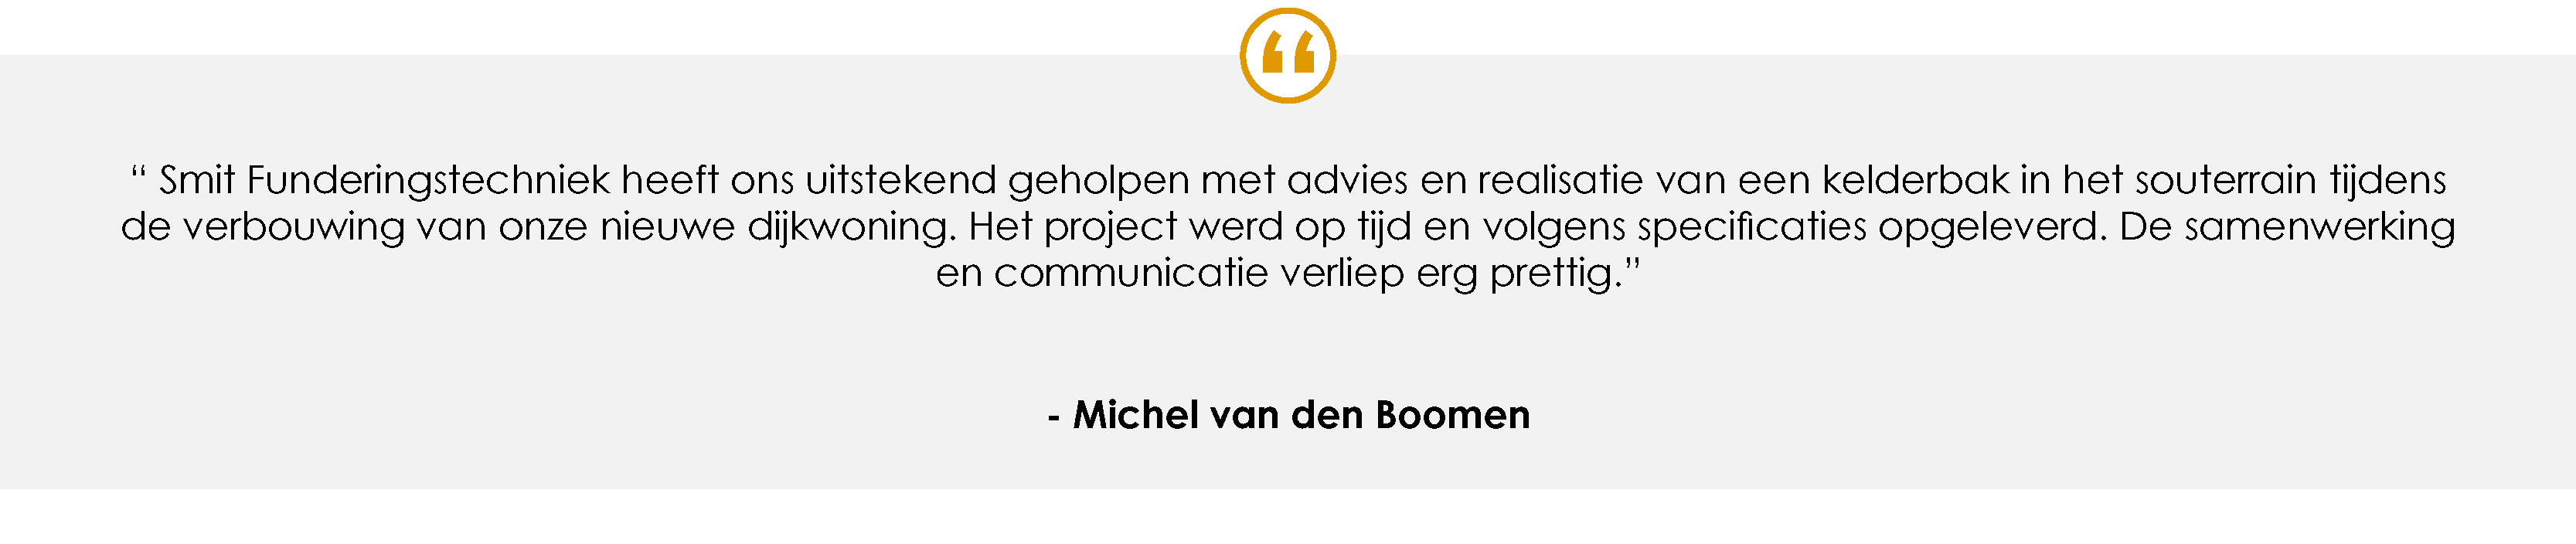 Testimonial - Michel van den Boomen